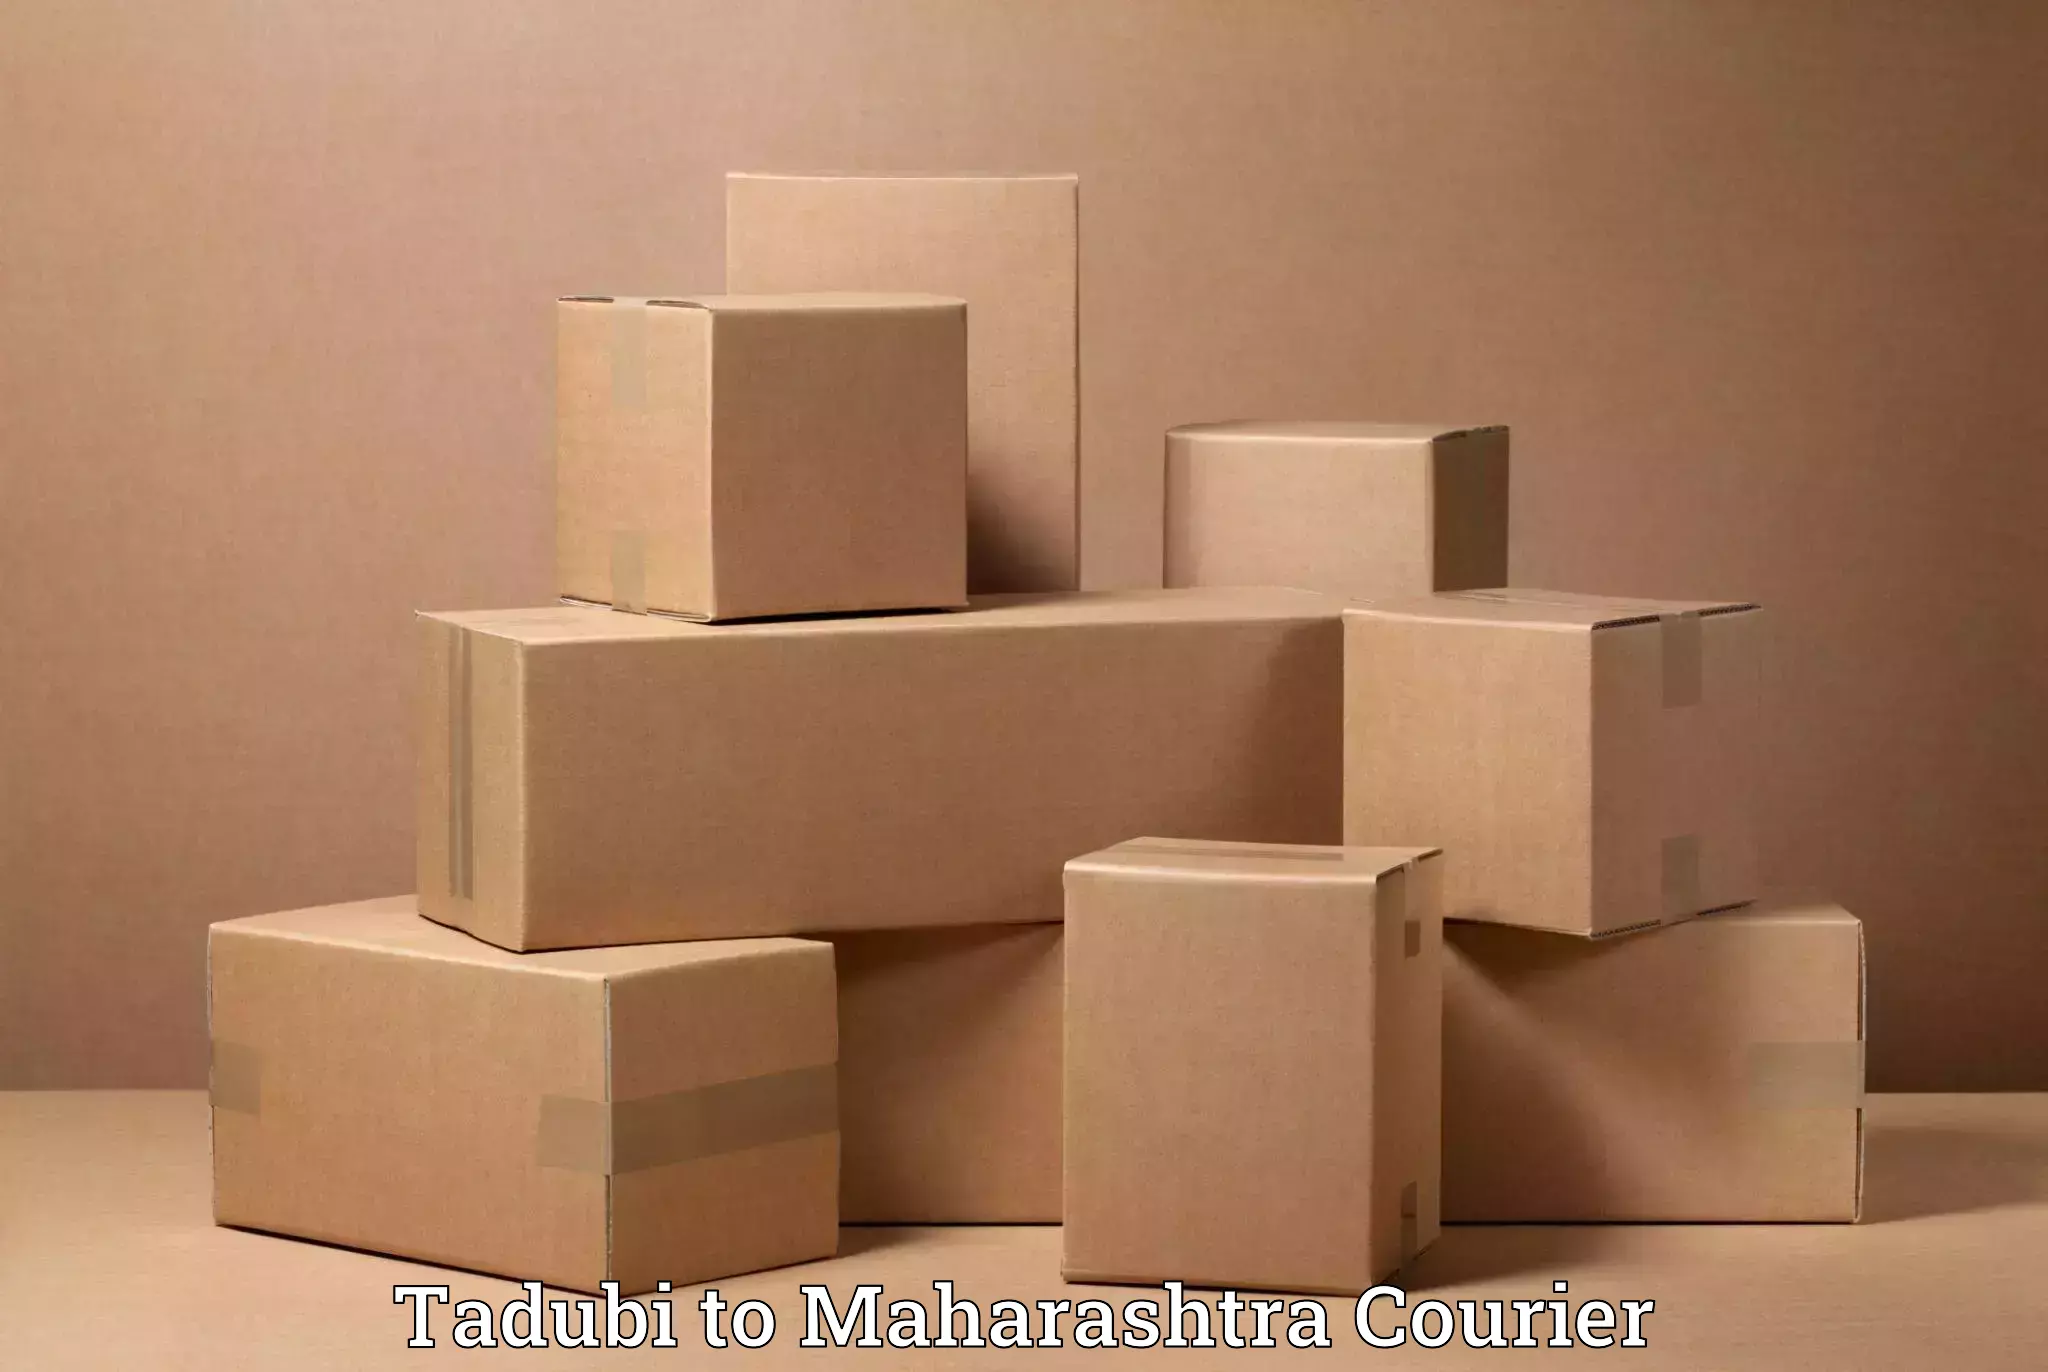 Furniture transport professionals Tadubi to Chembur